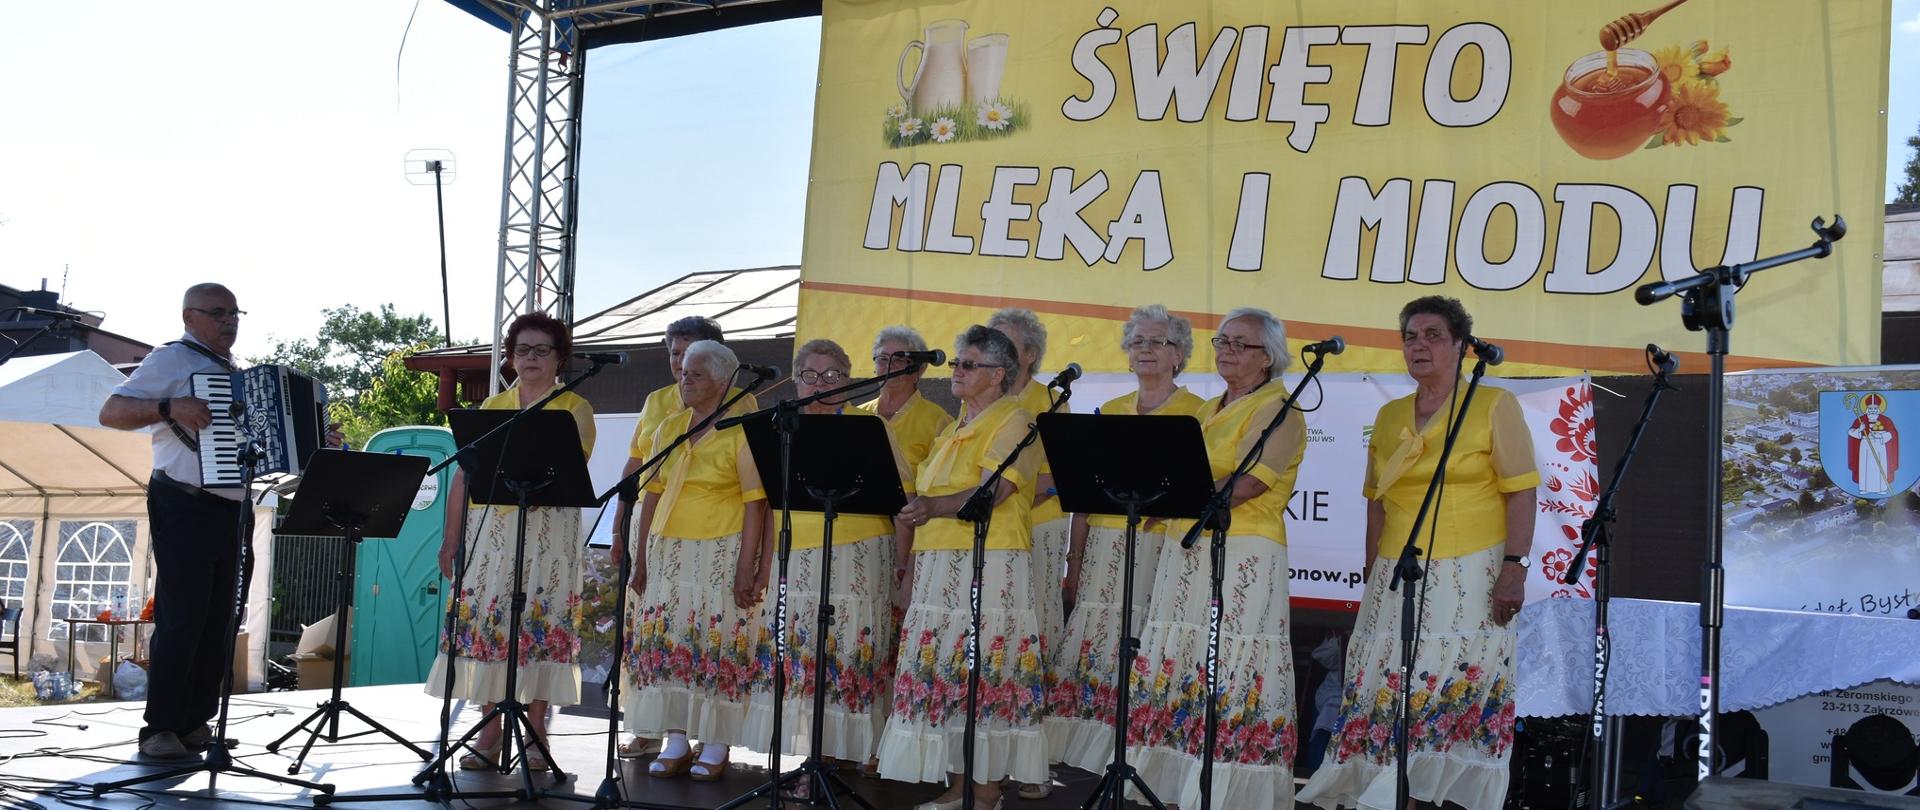 Występ zespołu ludowego podczas Święta mleka i miodu w Zakrzówku. Na zdjęciu 10 śpiewających pań i jeden pan grający na akordeonie. Panie ubrane w żółte koszulki i jasne spódnice w kwiaty.